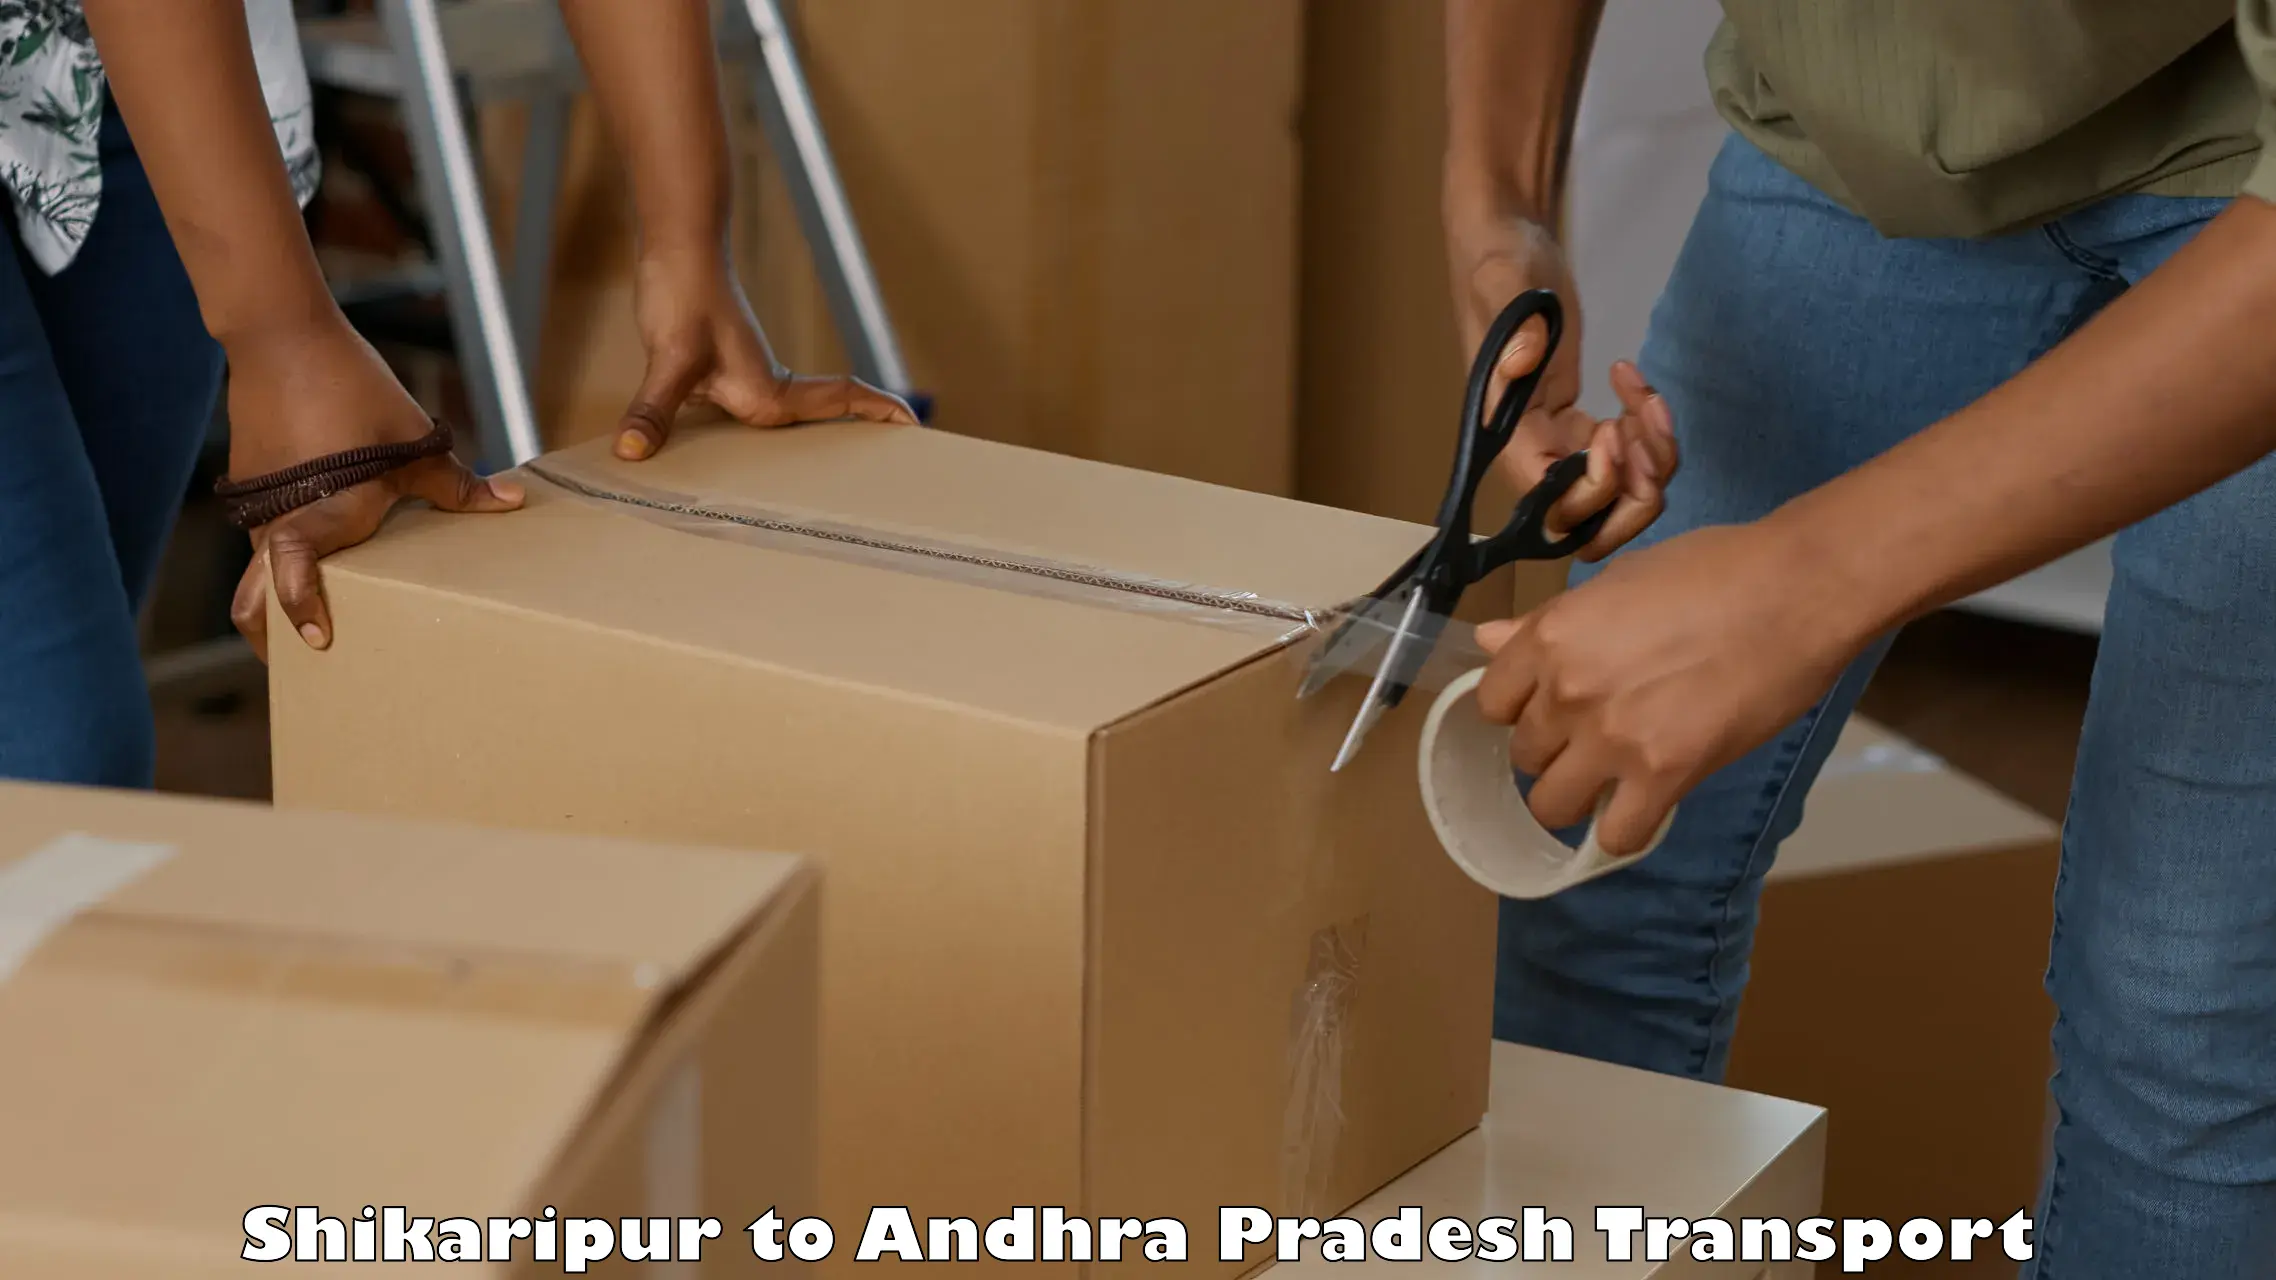 Luggage transport services Shikaripur to Andhra Pradesh